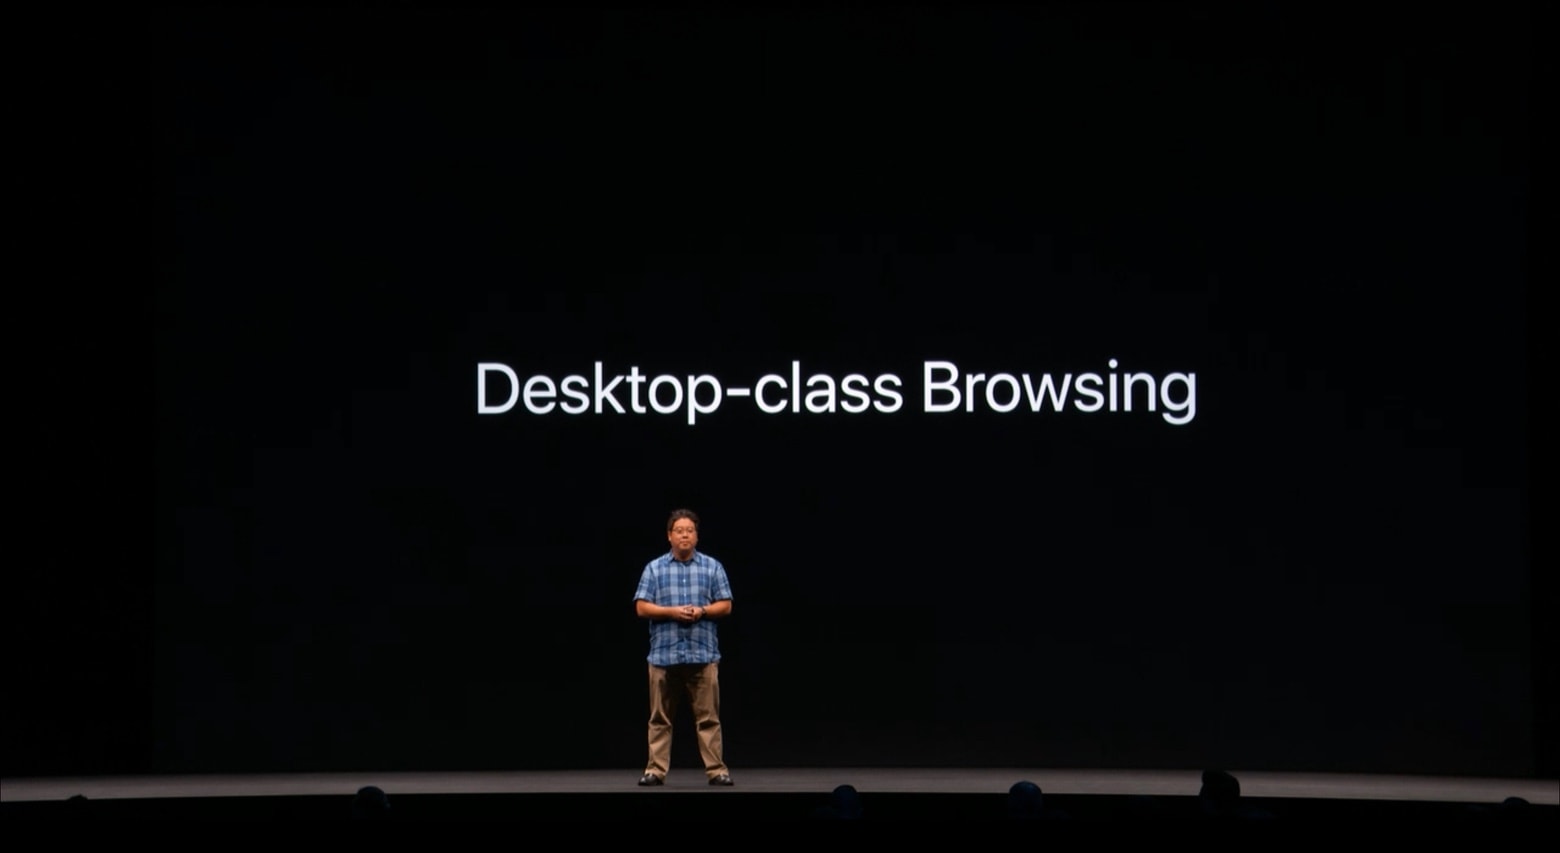 Safari in iPadOS desktop-class browsing